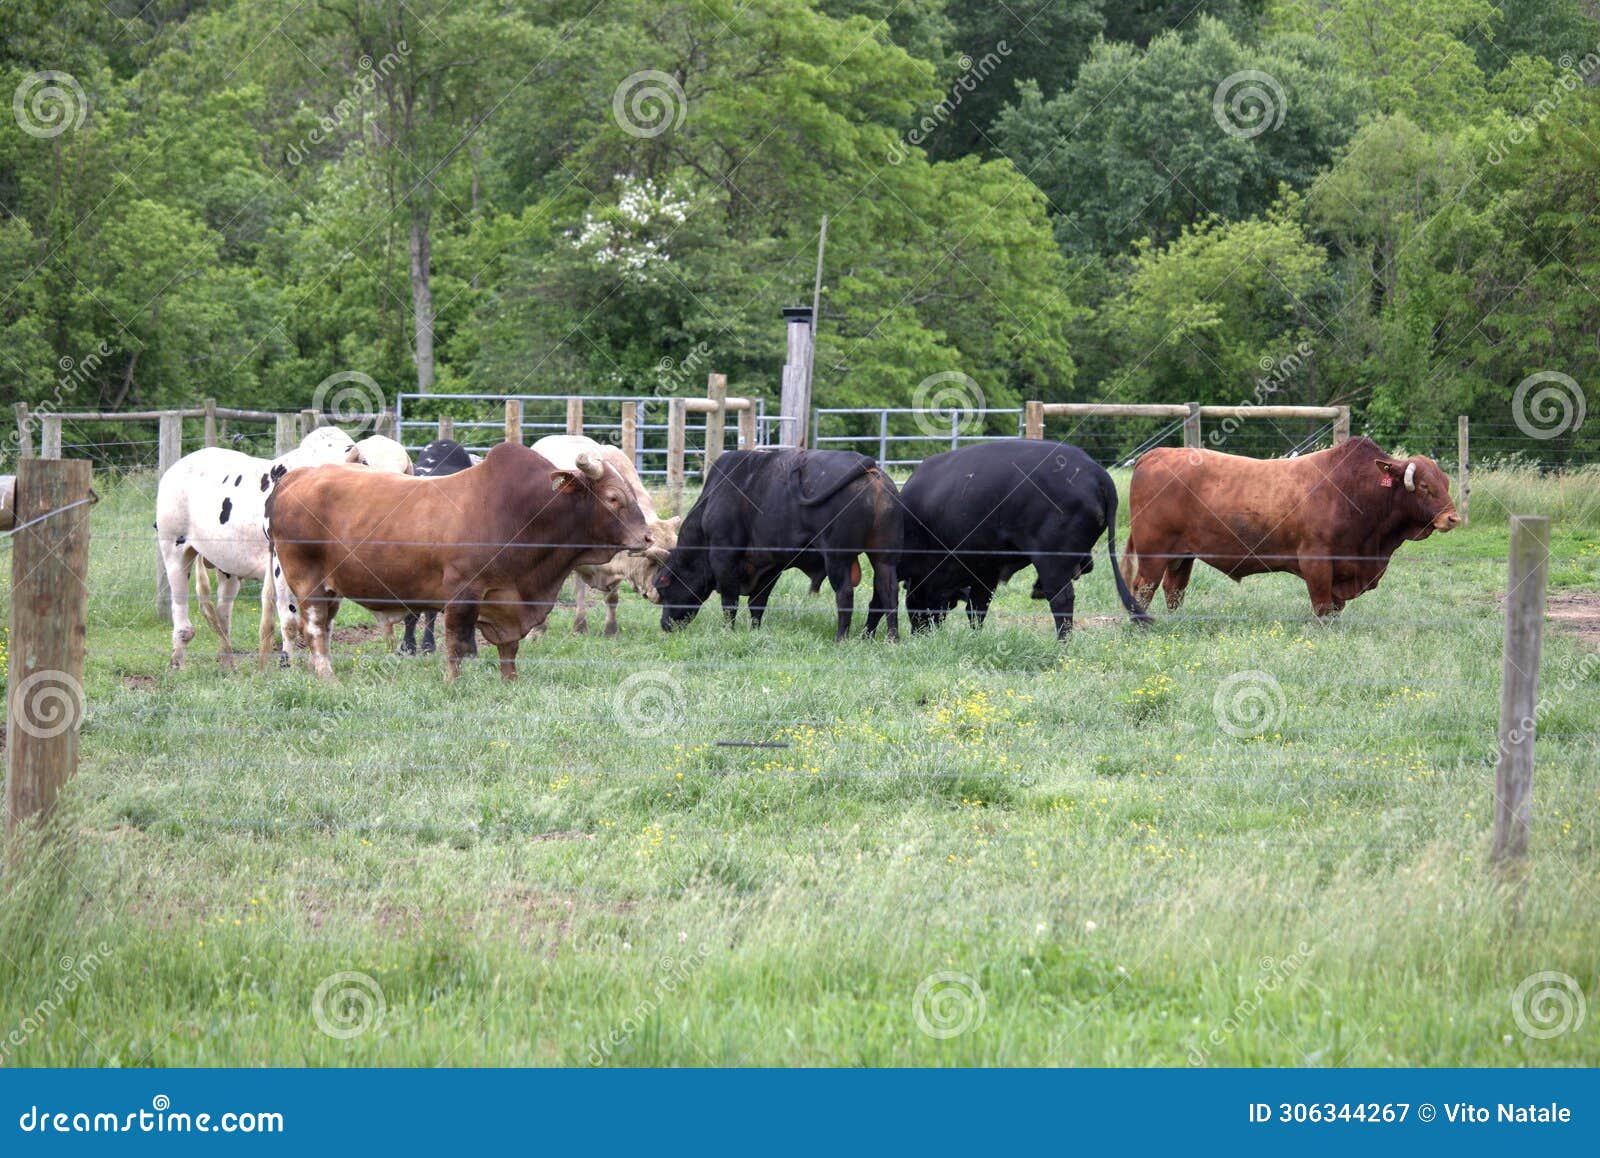 bulls out grazing the farm grass.